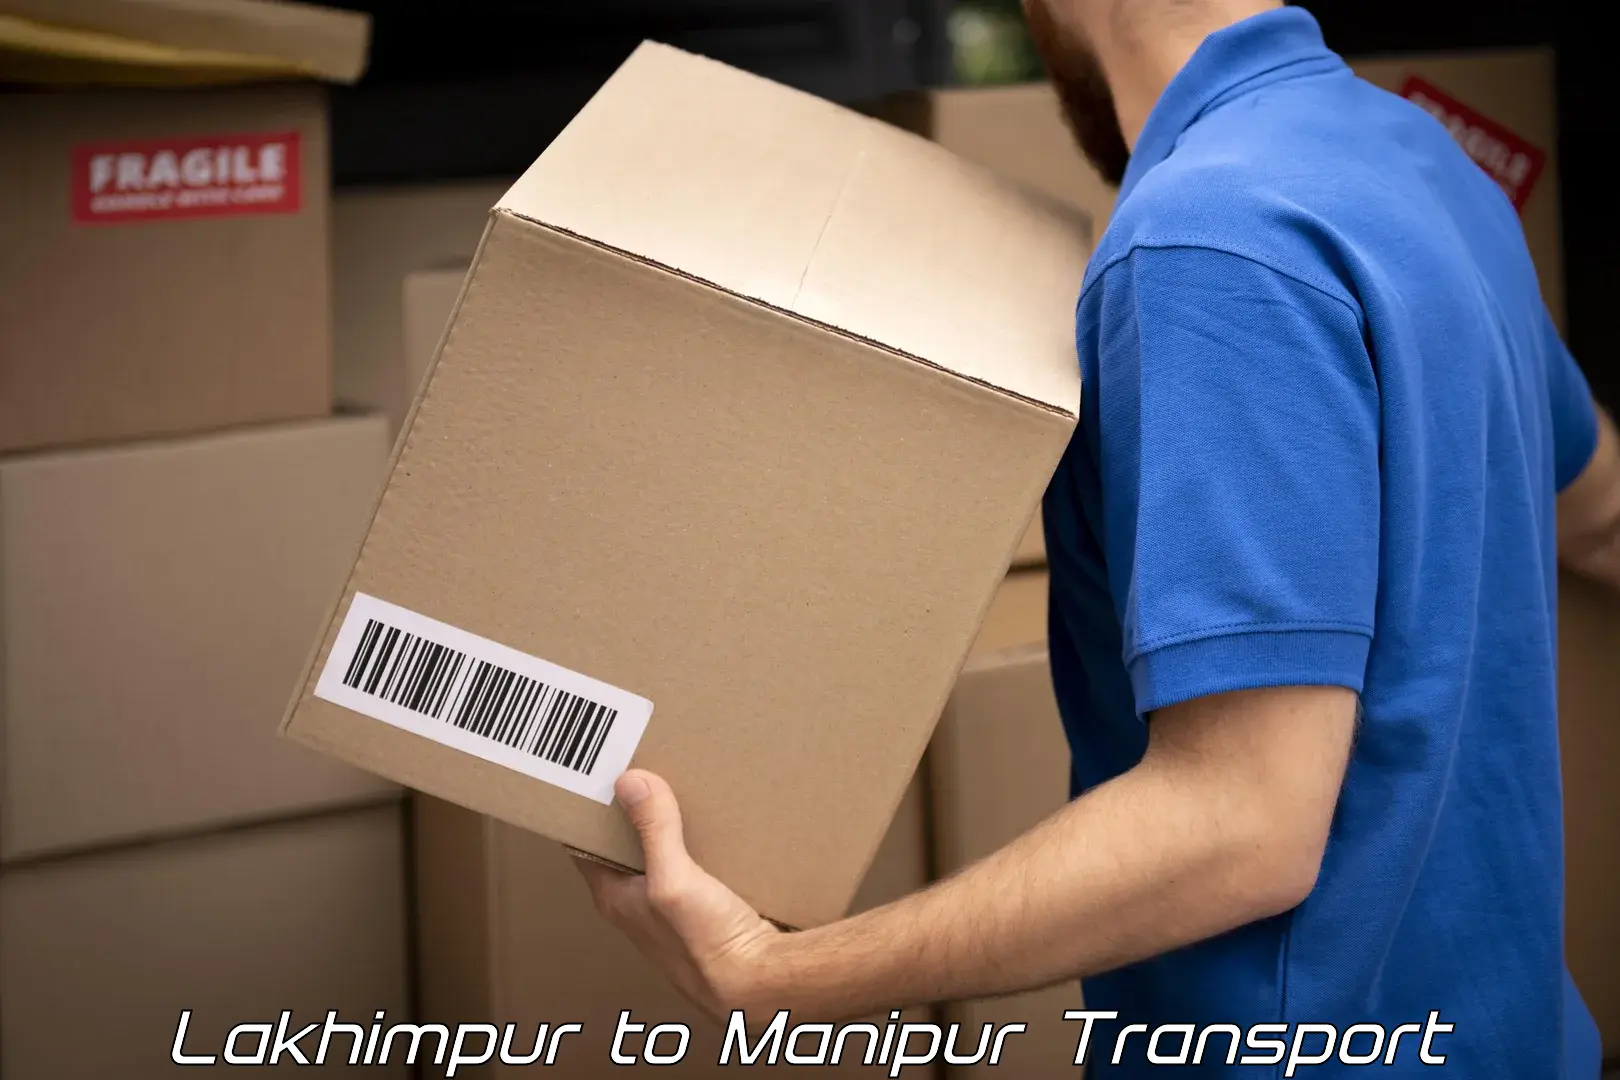 Luggage transport services Lakhimpur to Kaptipada